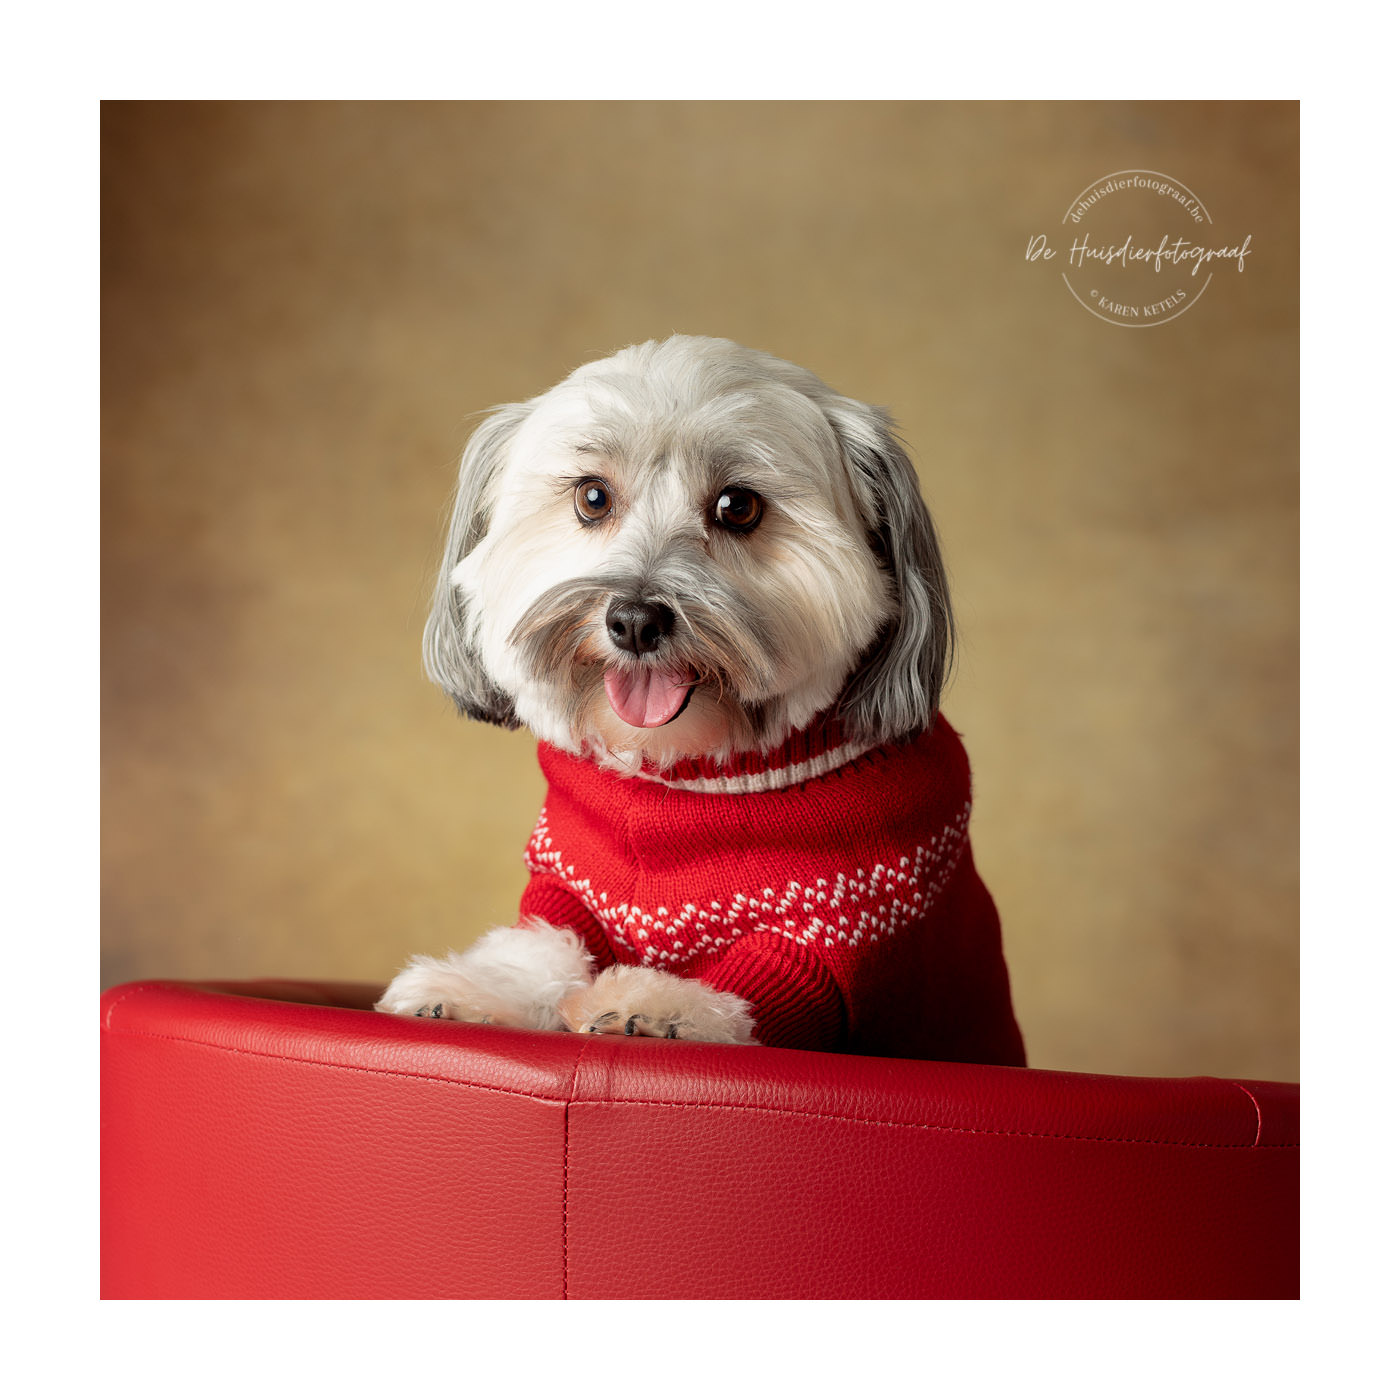 Portret van een Shihtzu in een kerstjasje in de fotostudio De Huisdierfotograaf